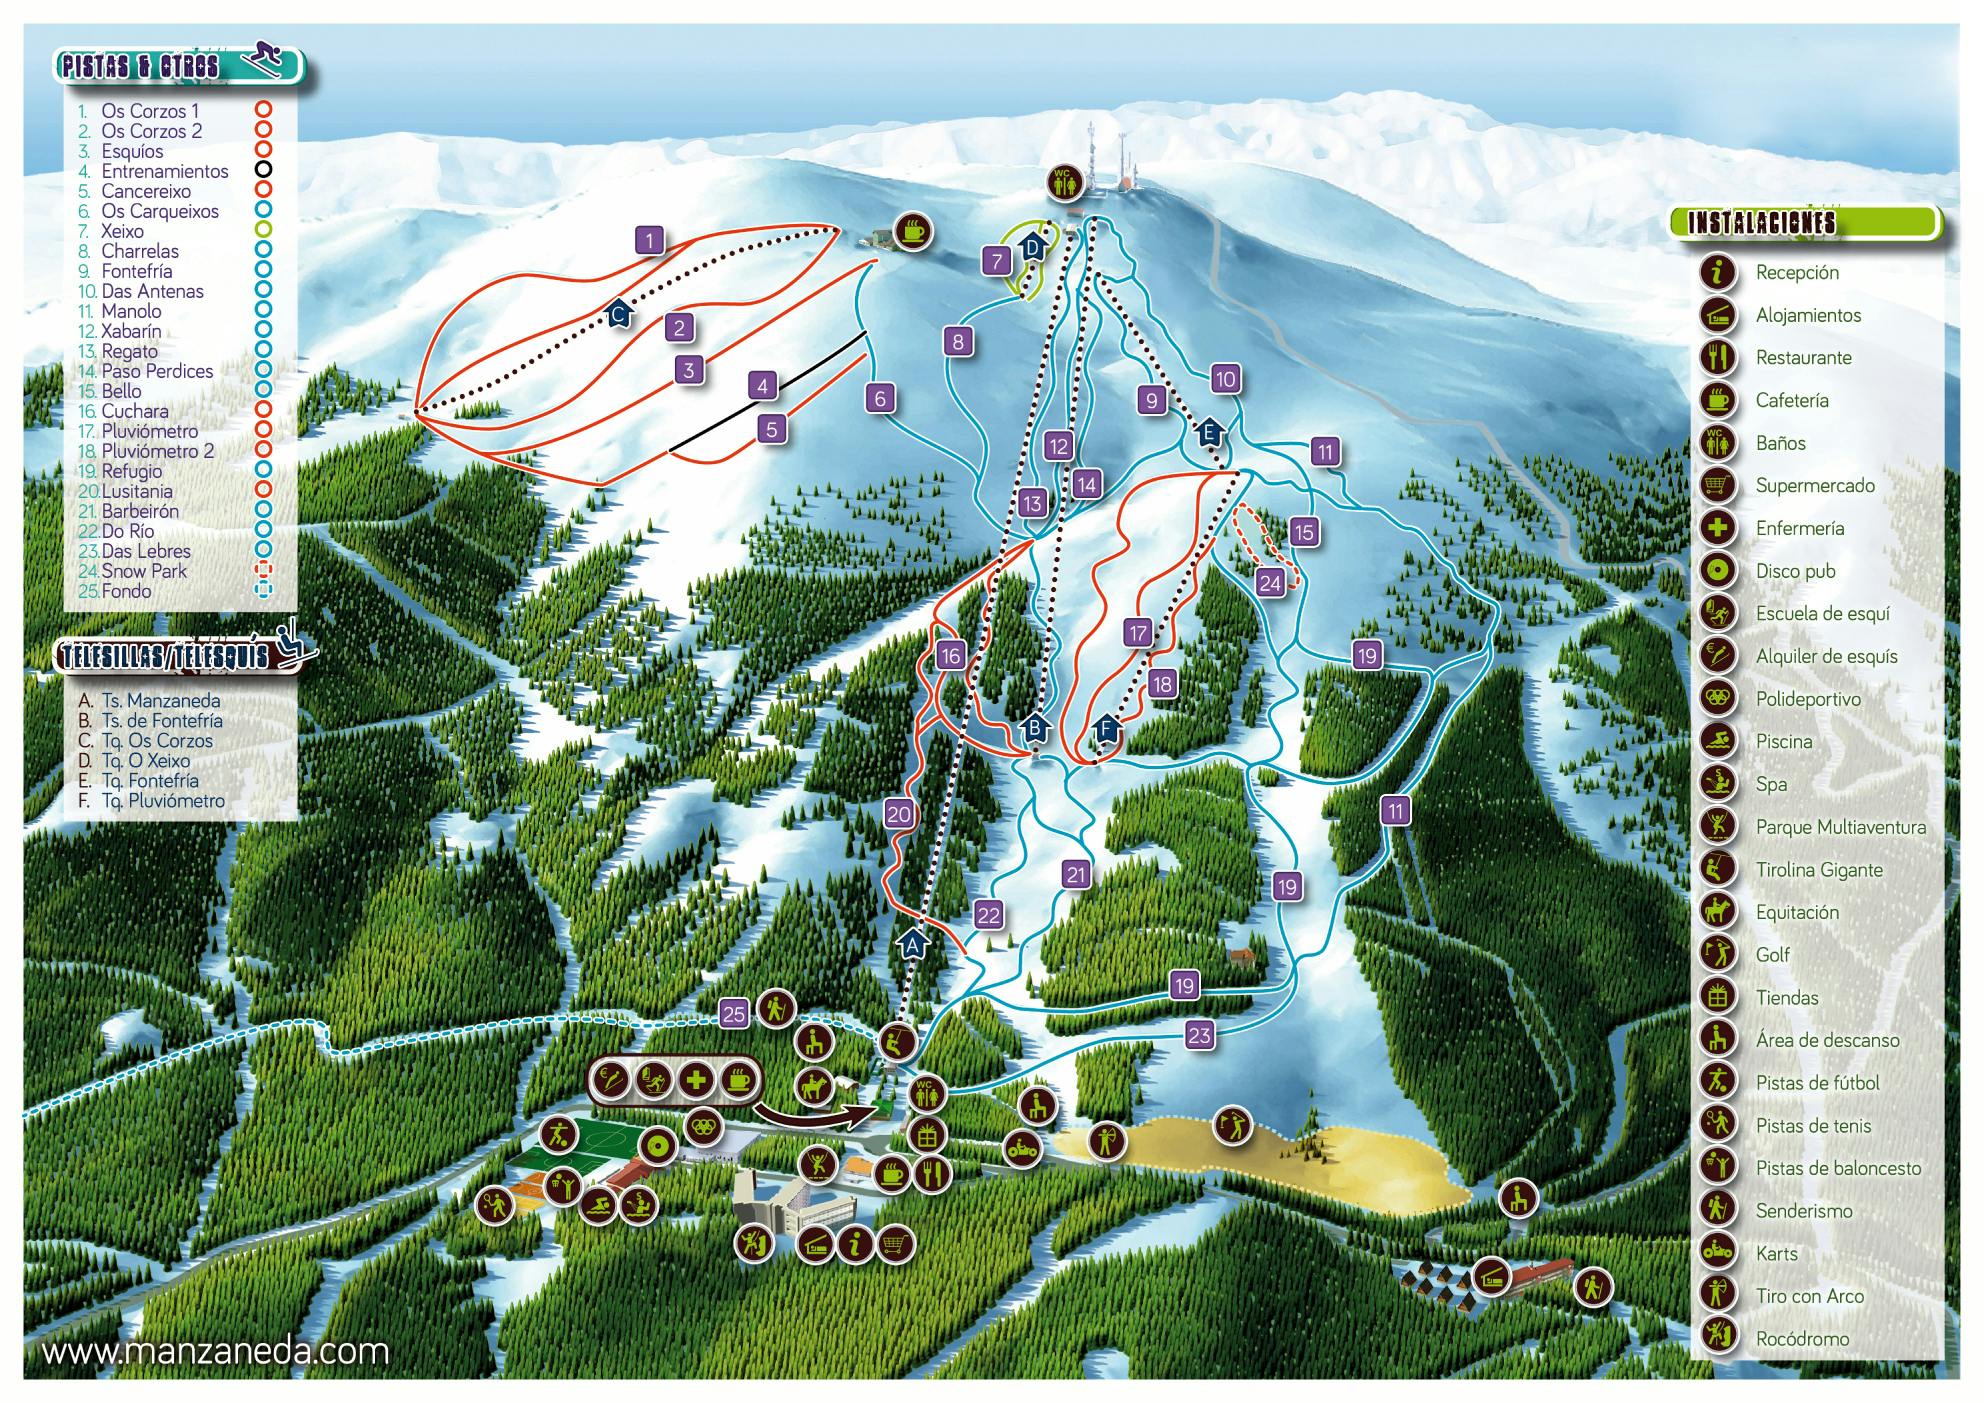 Copitos de Nieve - Estaciones de esquí, ski, snowboard - Mapa de la estación Manzaneda